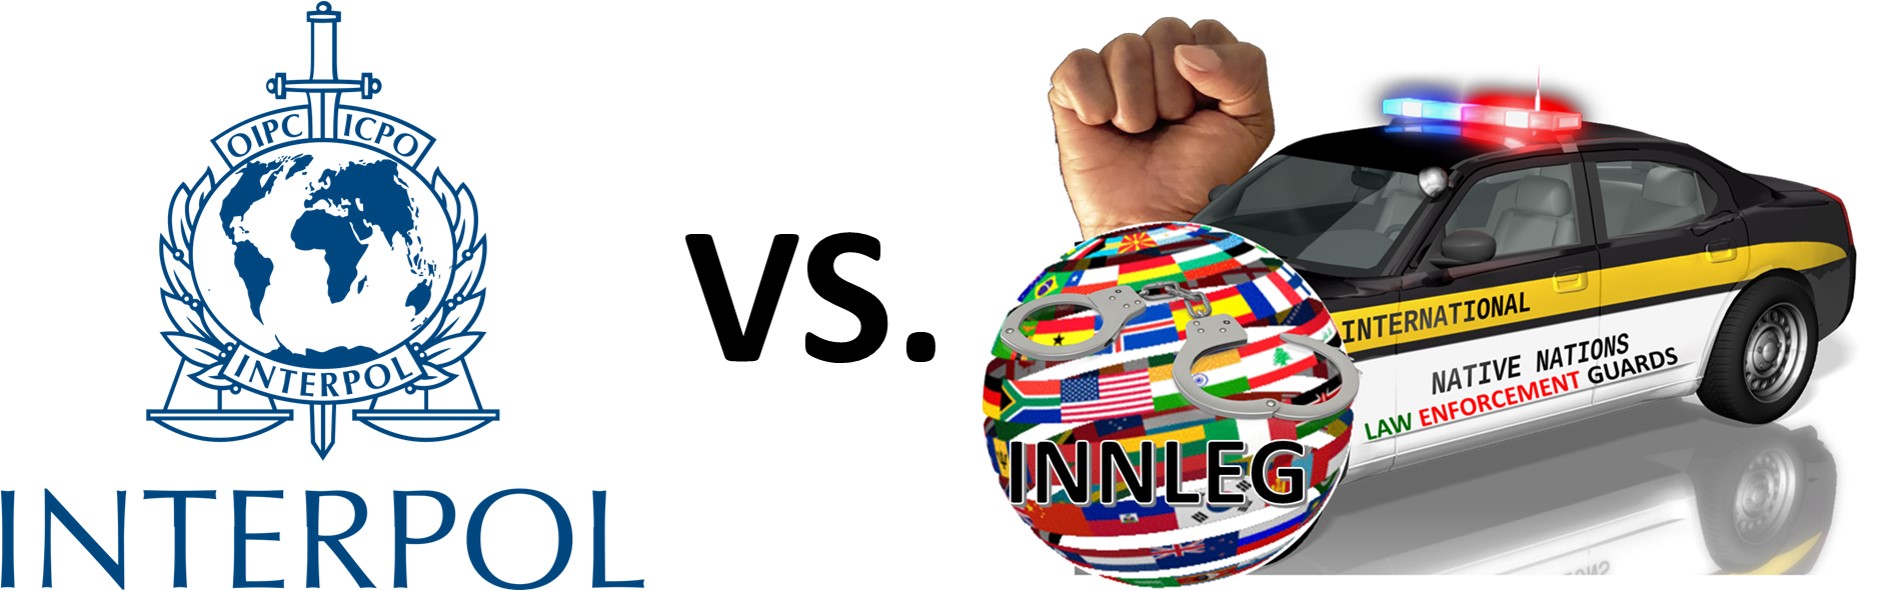 INTERPOL vs INNLEG